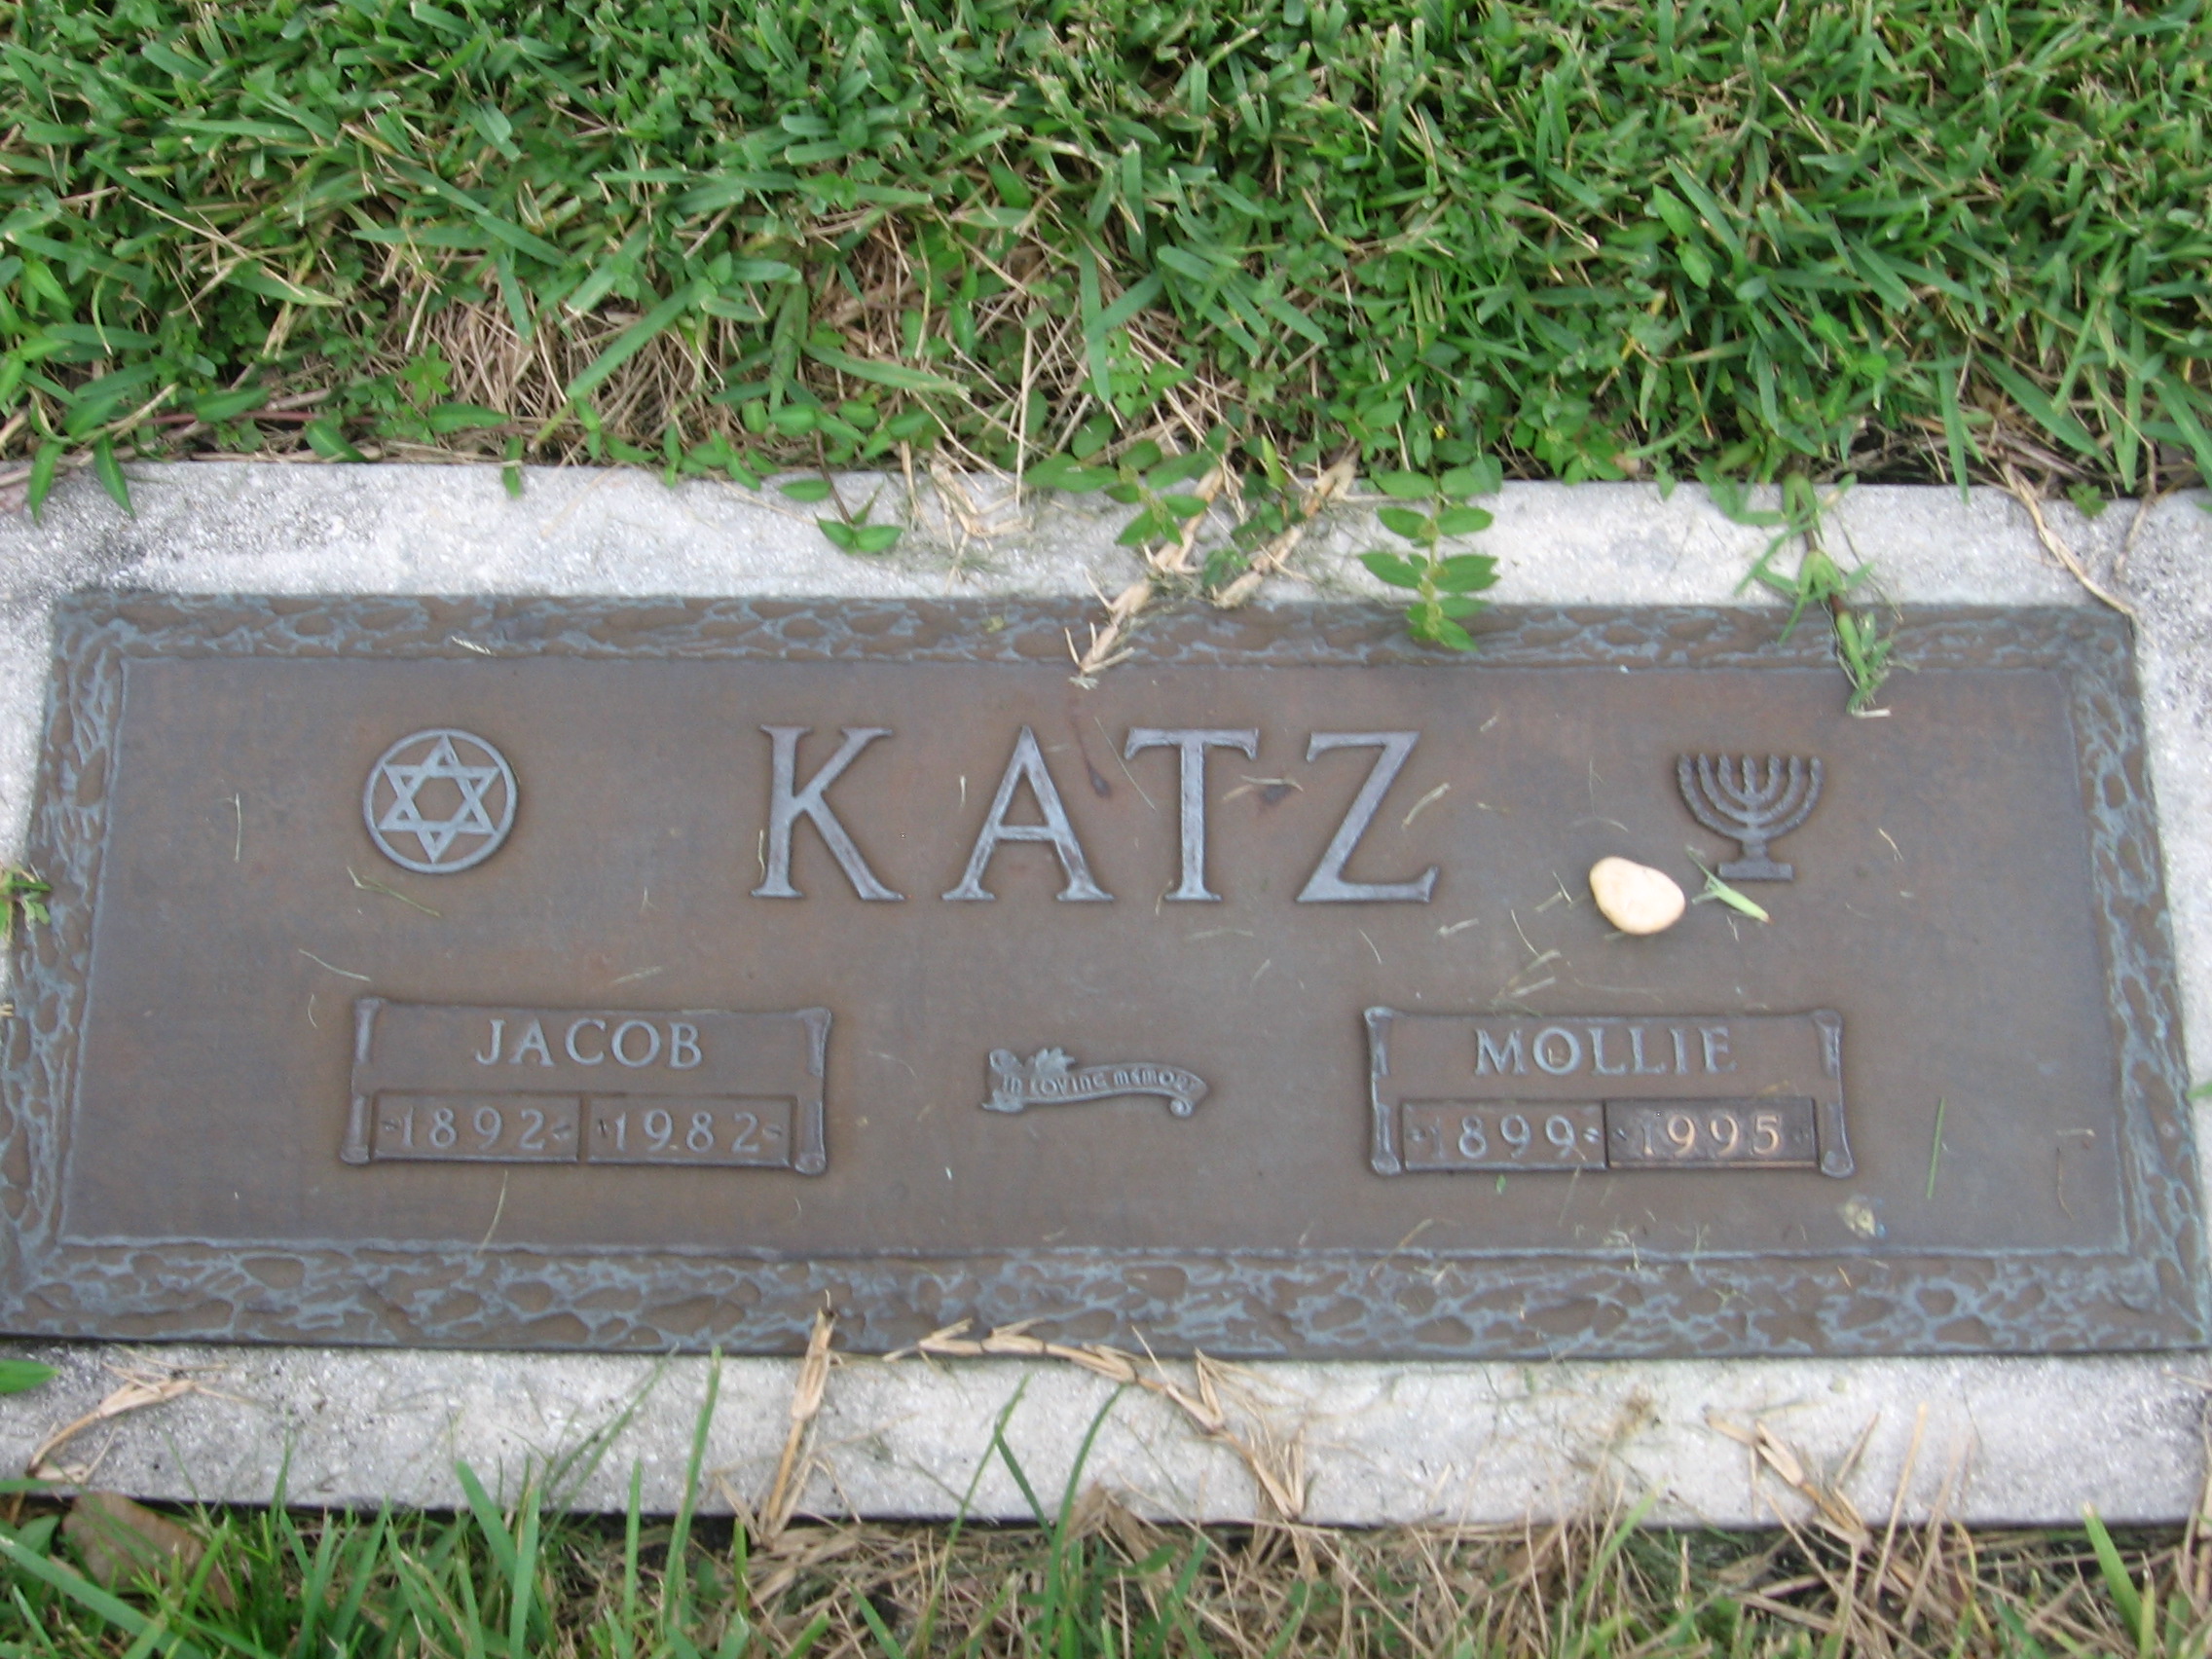 Jacob Katz